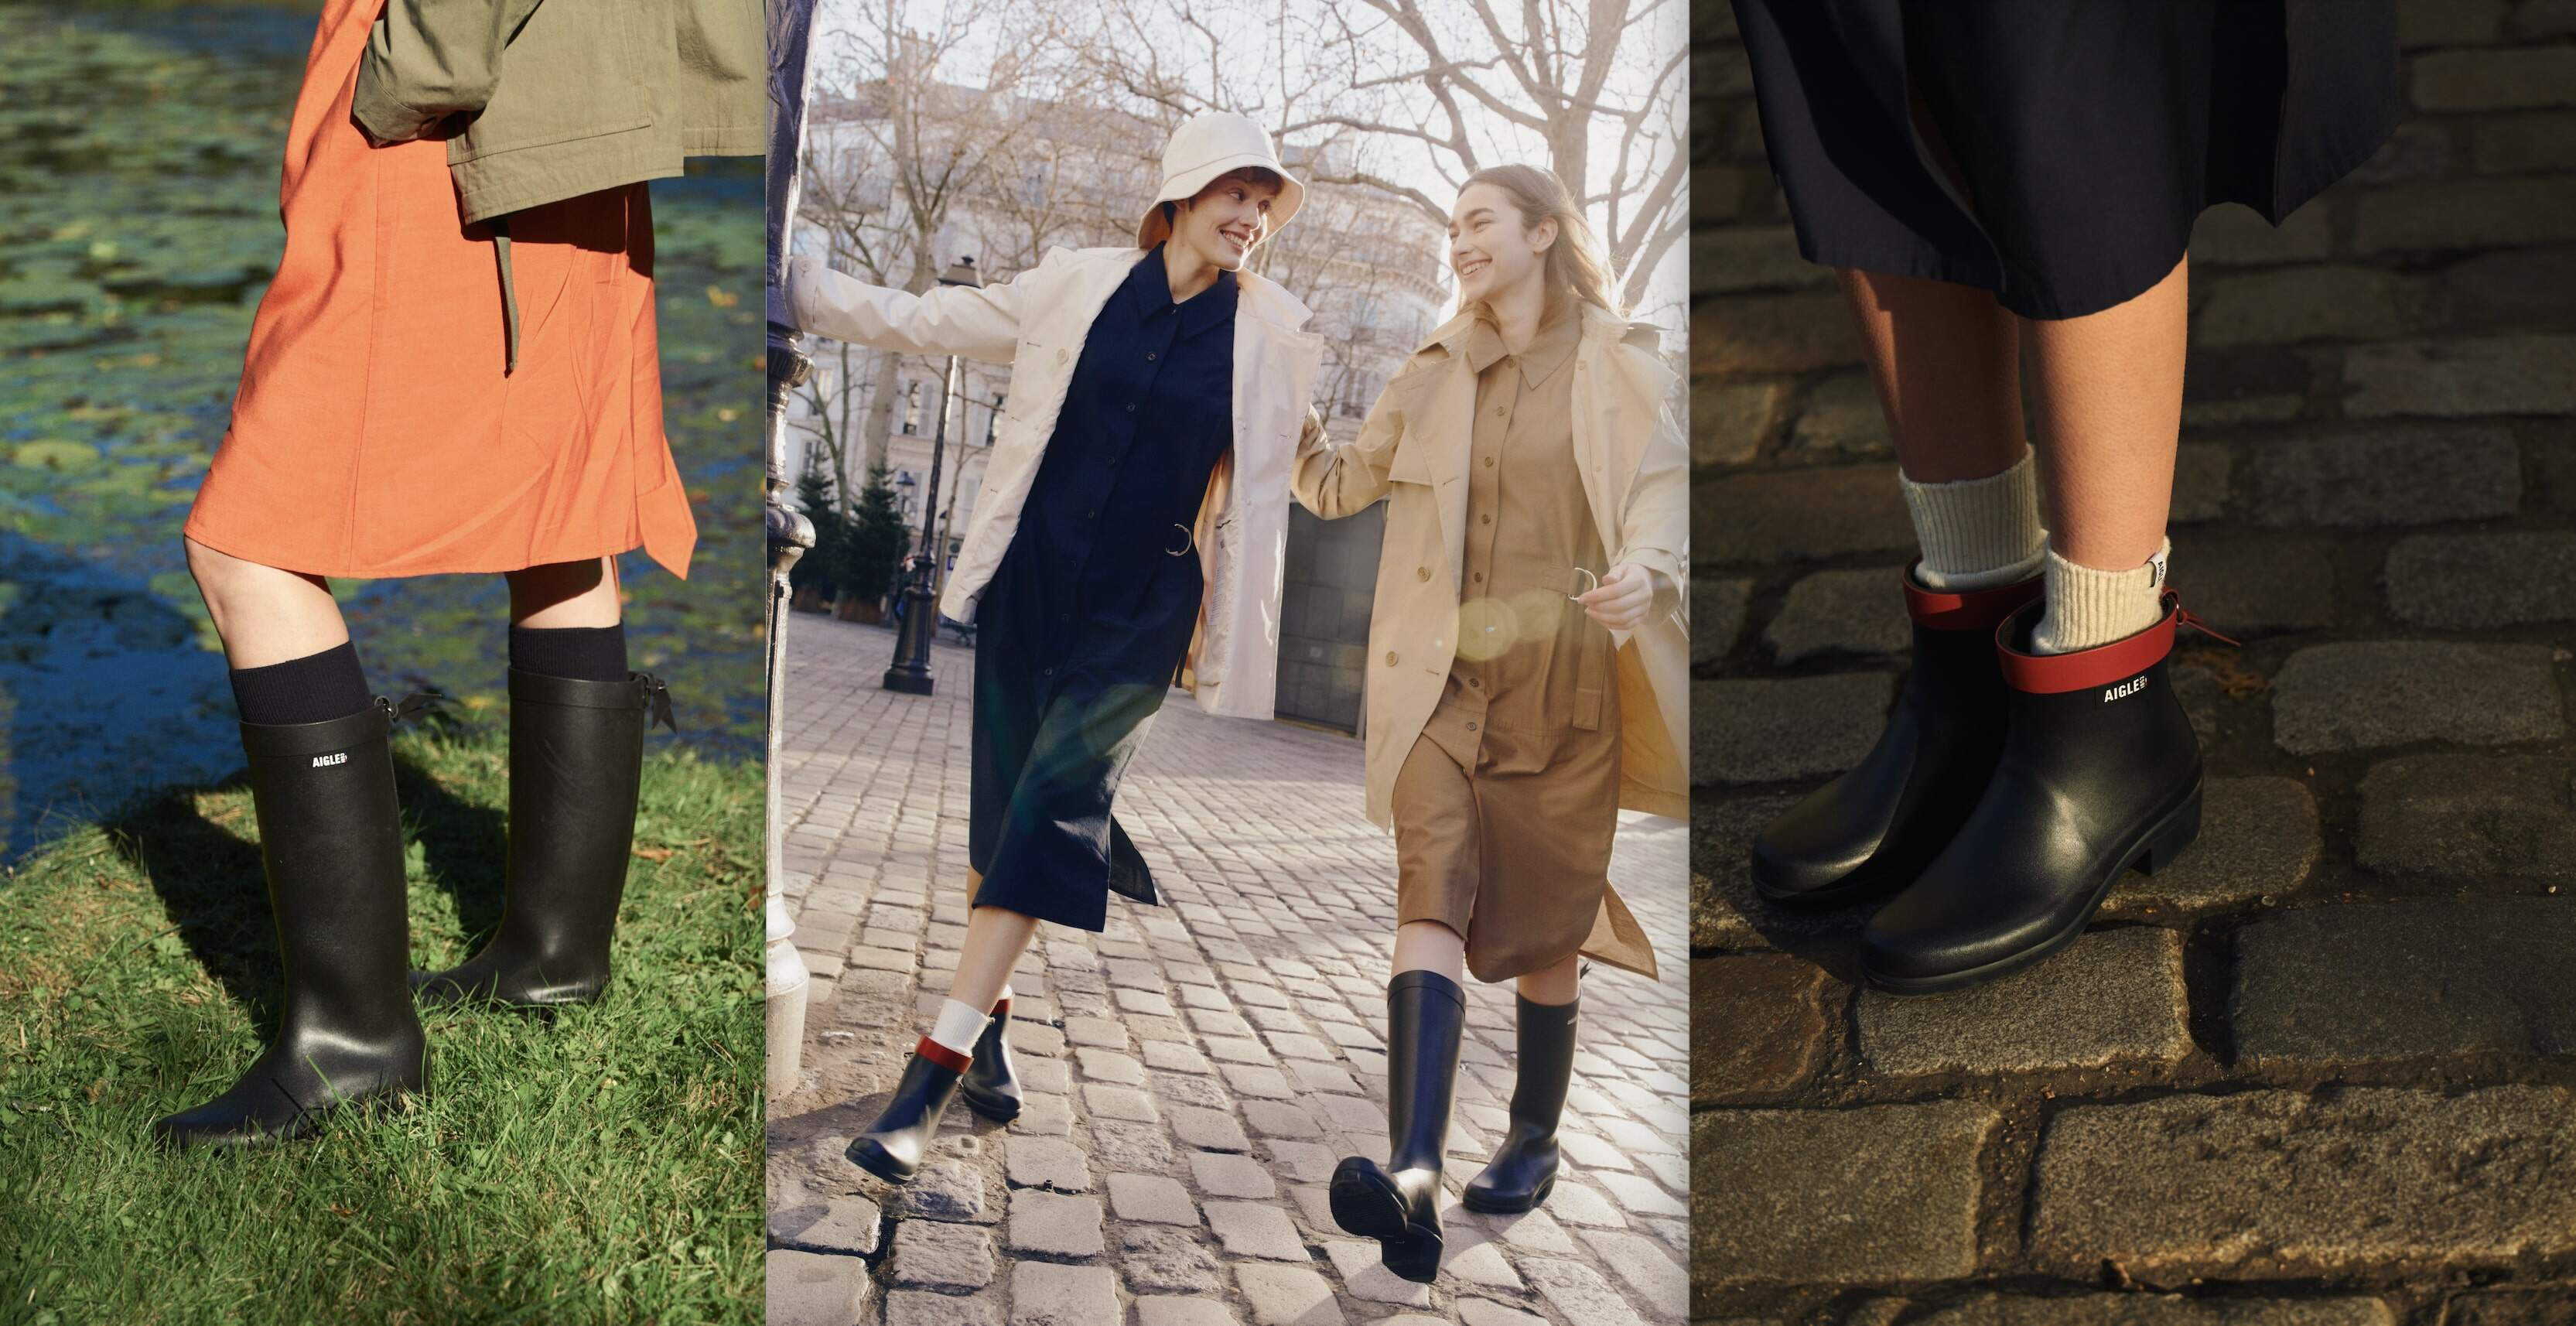 AIGLE全新概念店登陸又一城｜Myrica天然橡膠靴同步登場✨法國全人手製 時尚功能兼備👢